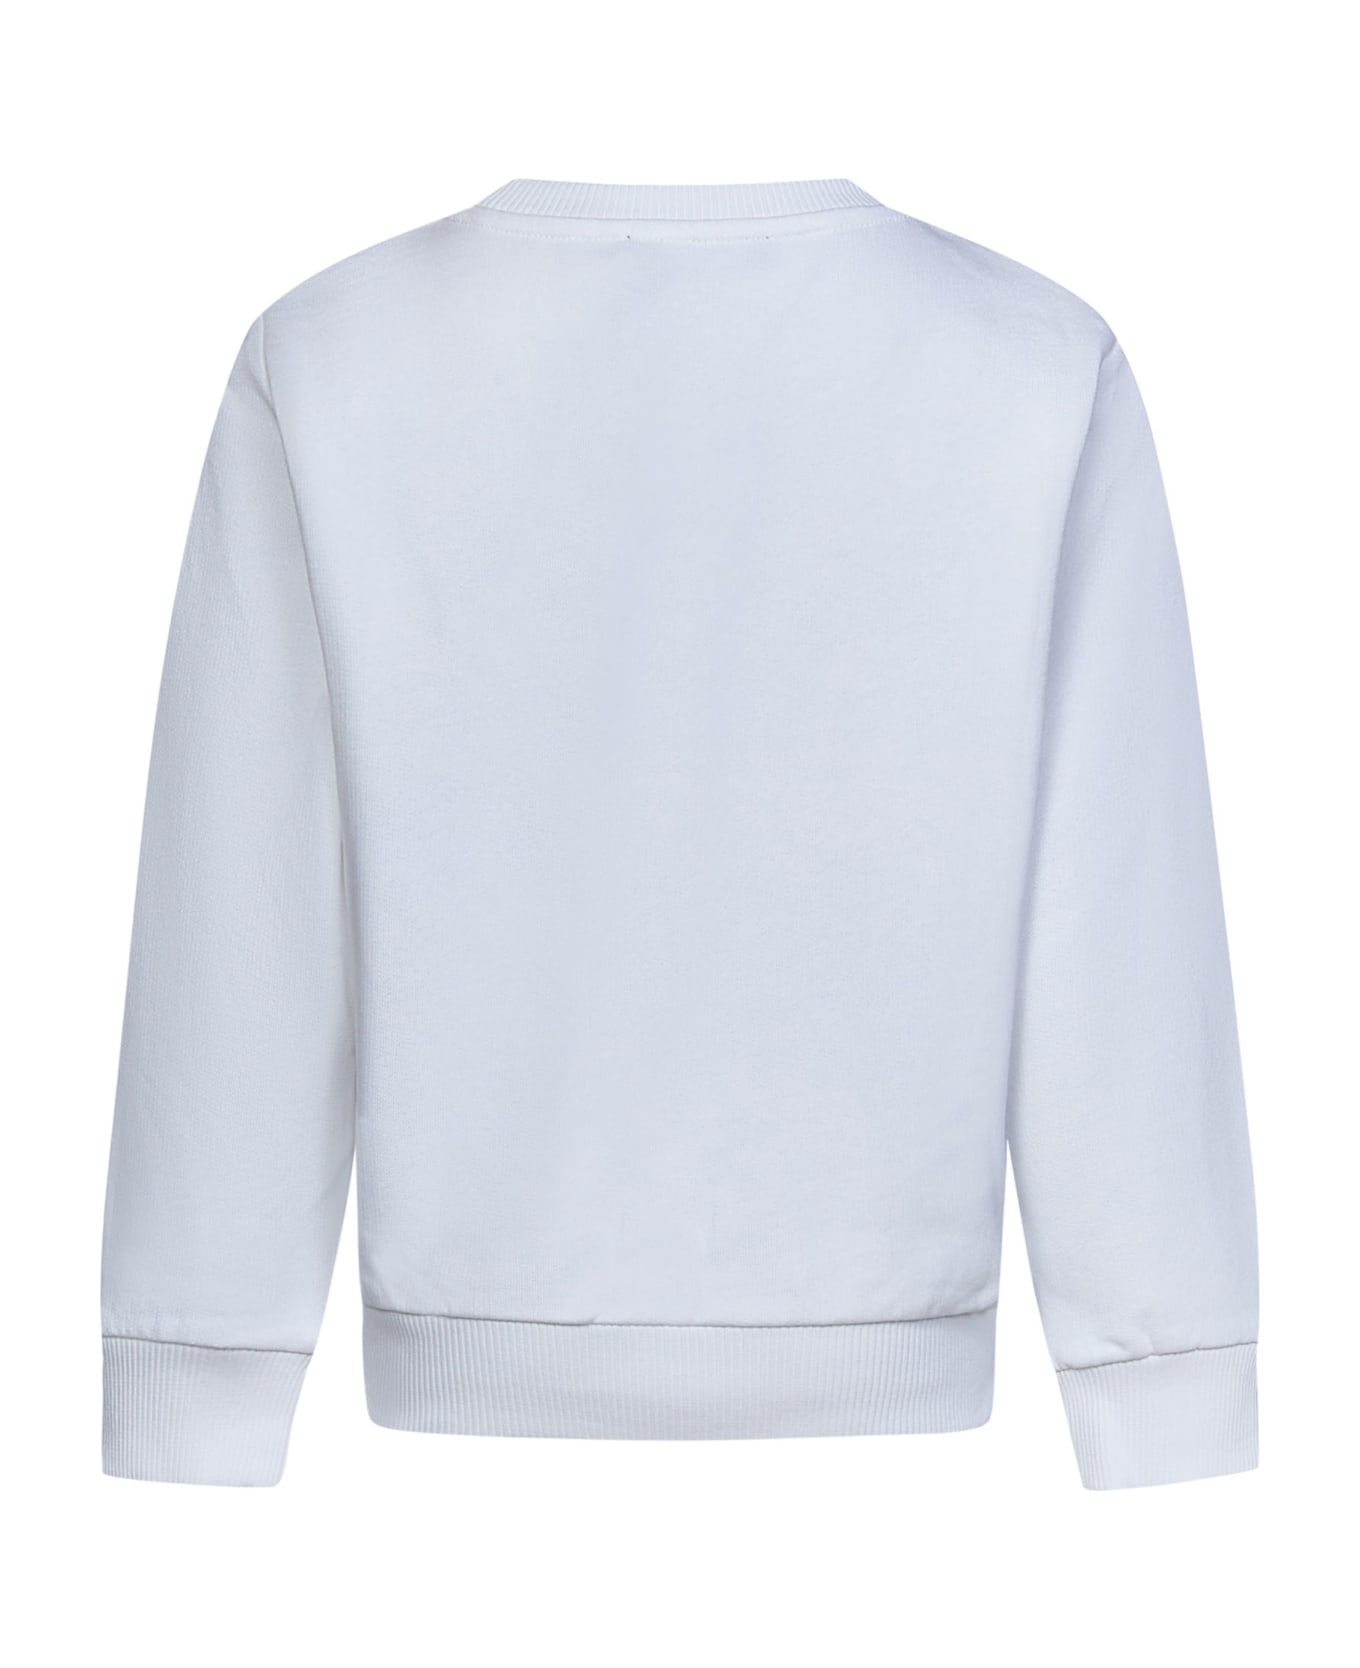 Balmain Sweatshirt - White/black